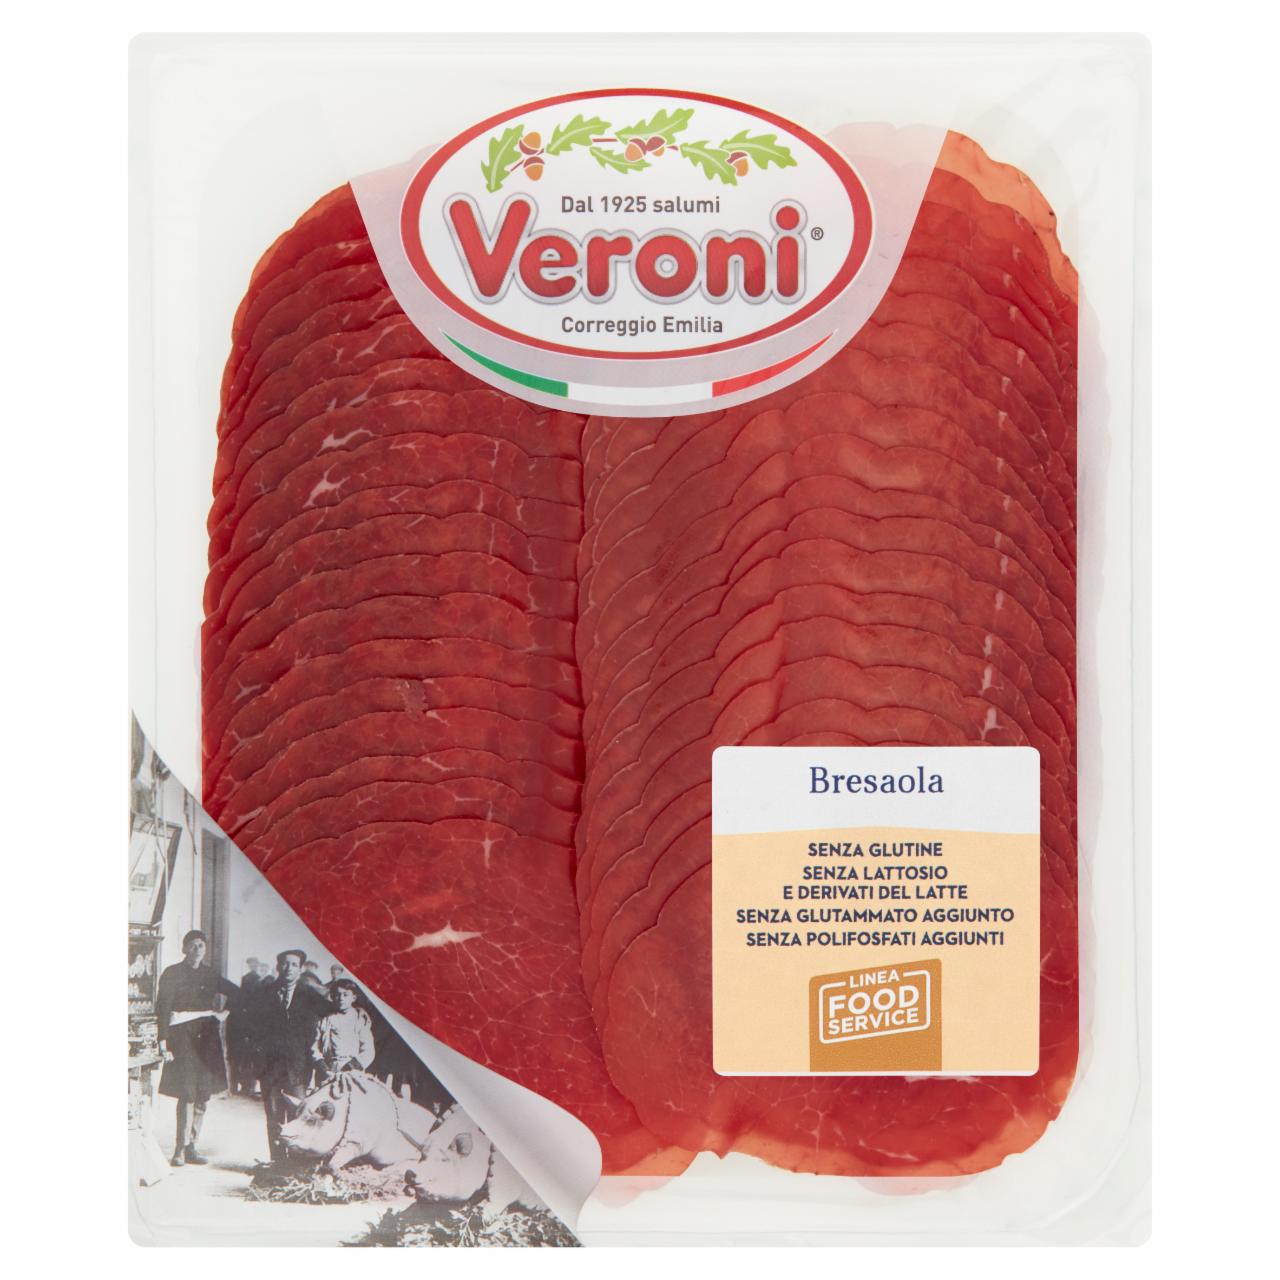 Zdjęcia - Veroni Bresaola Produkt wołowy 0,250 kg